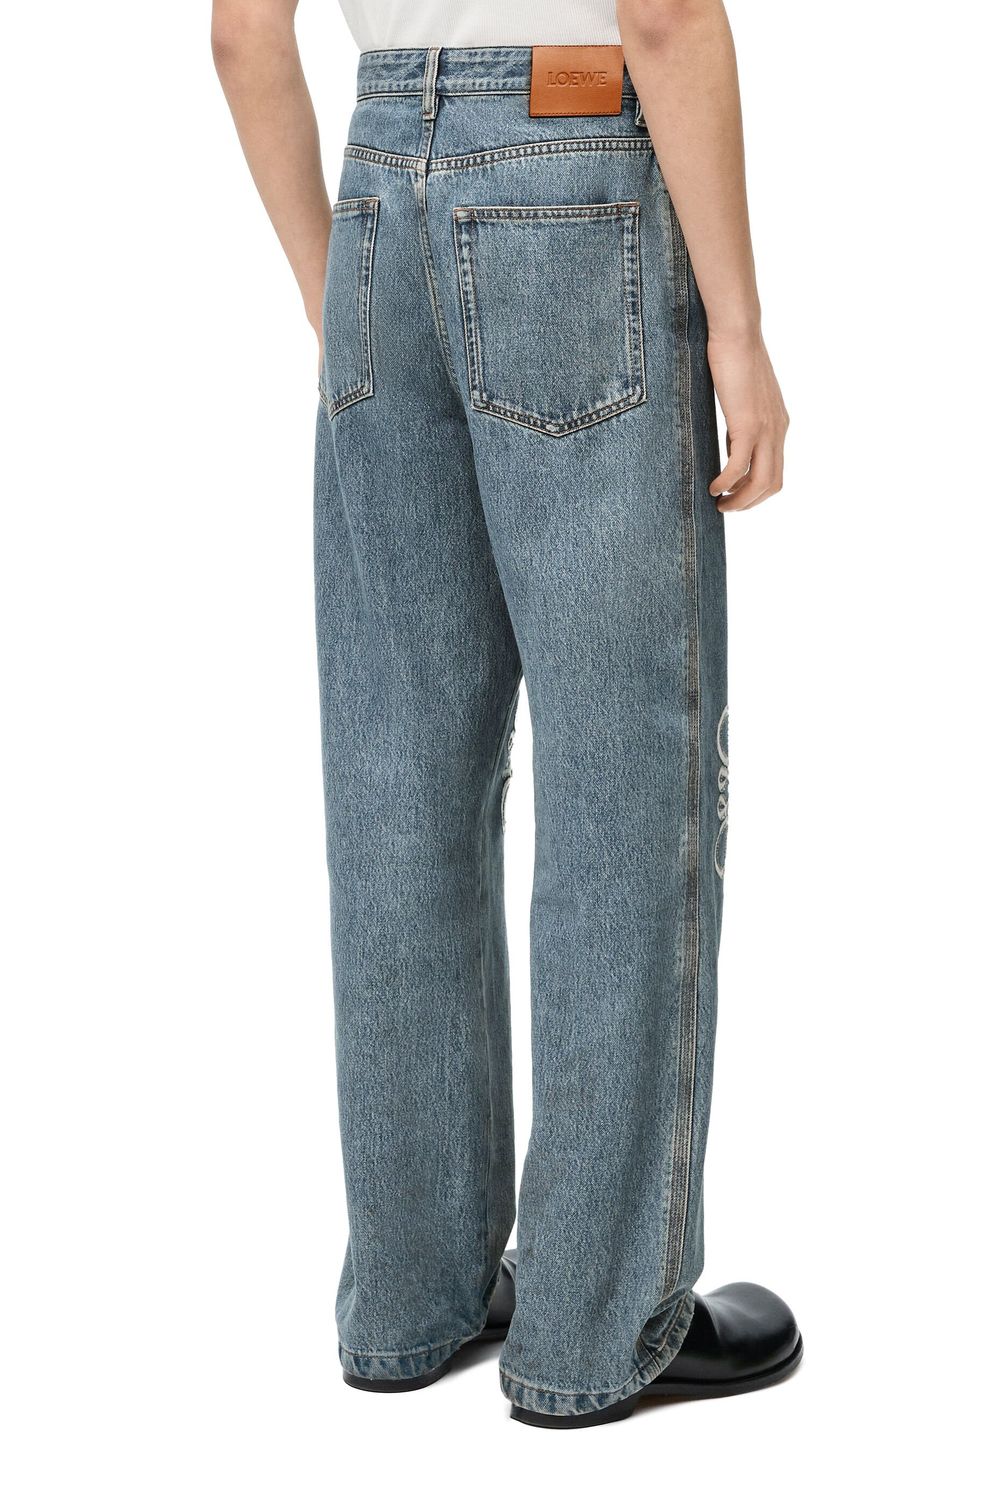 LOEWE ANAGRAM BAGGY Jeans